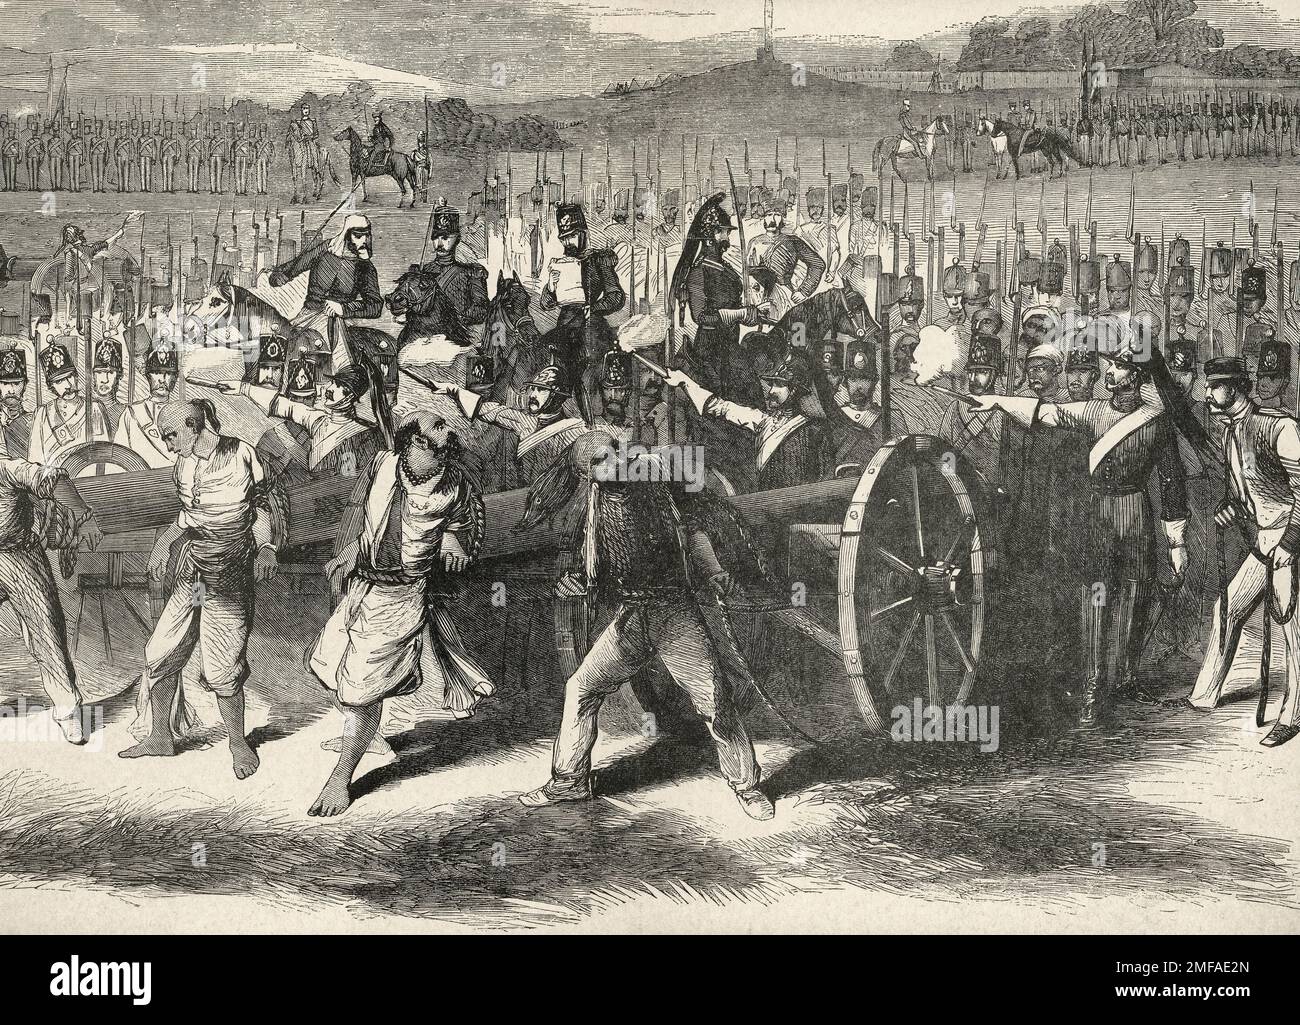 British 'Civilization' - Comment les Anglais traitent les prisonniers de guerre - Blowing Sepoys des armes en Inde, 1857 Banque D'Images